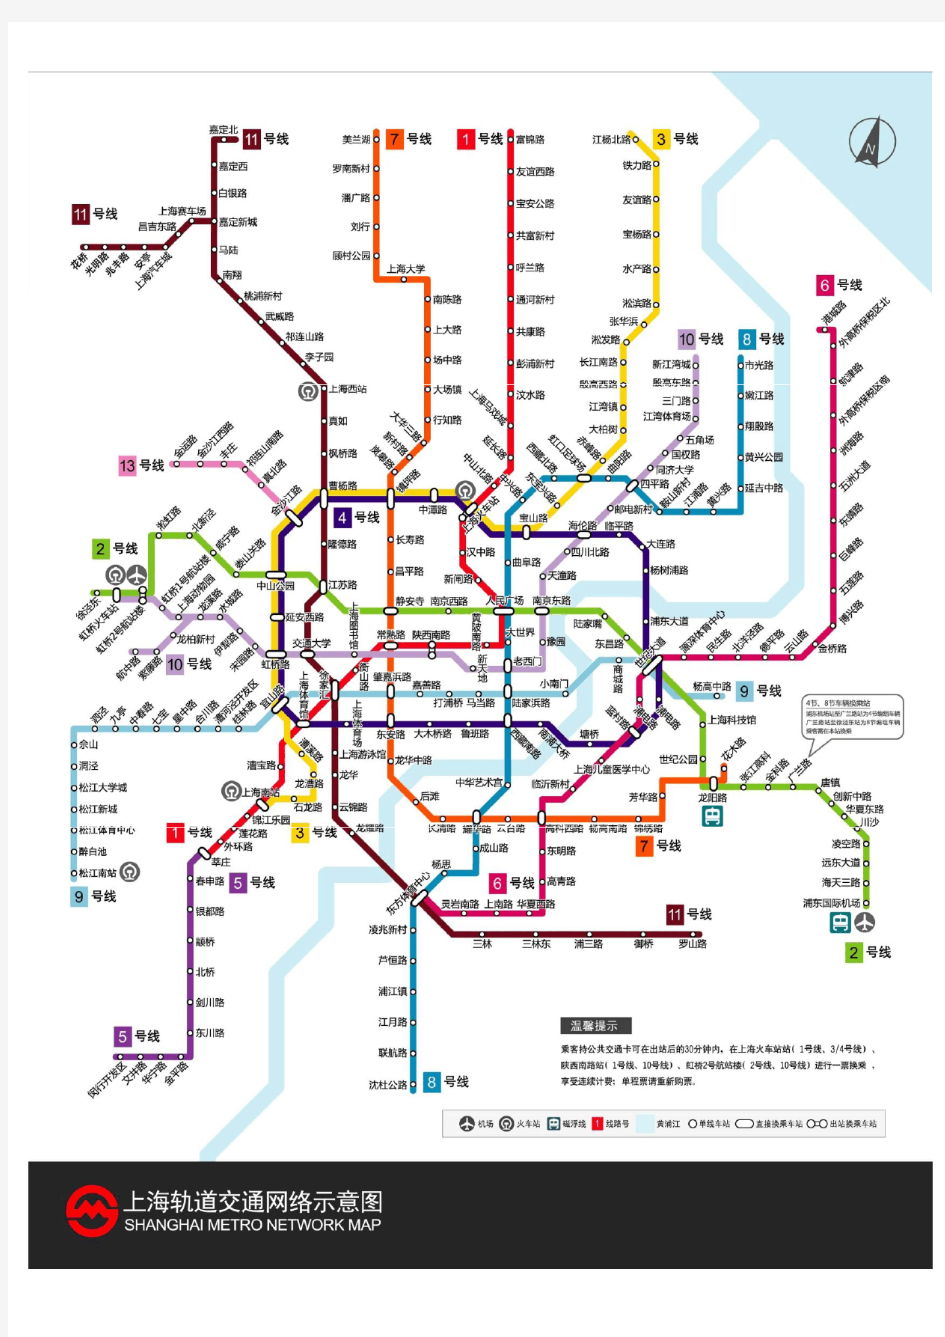 2013年上海地铁线路图(高清版)